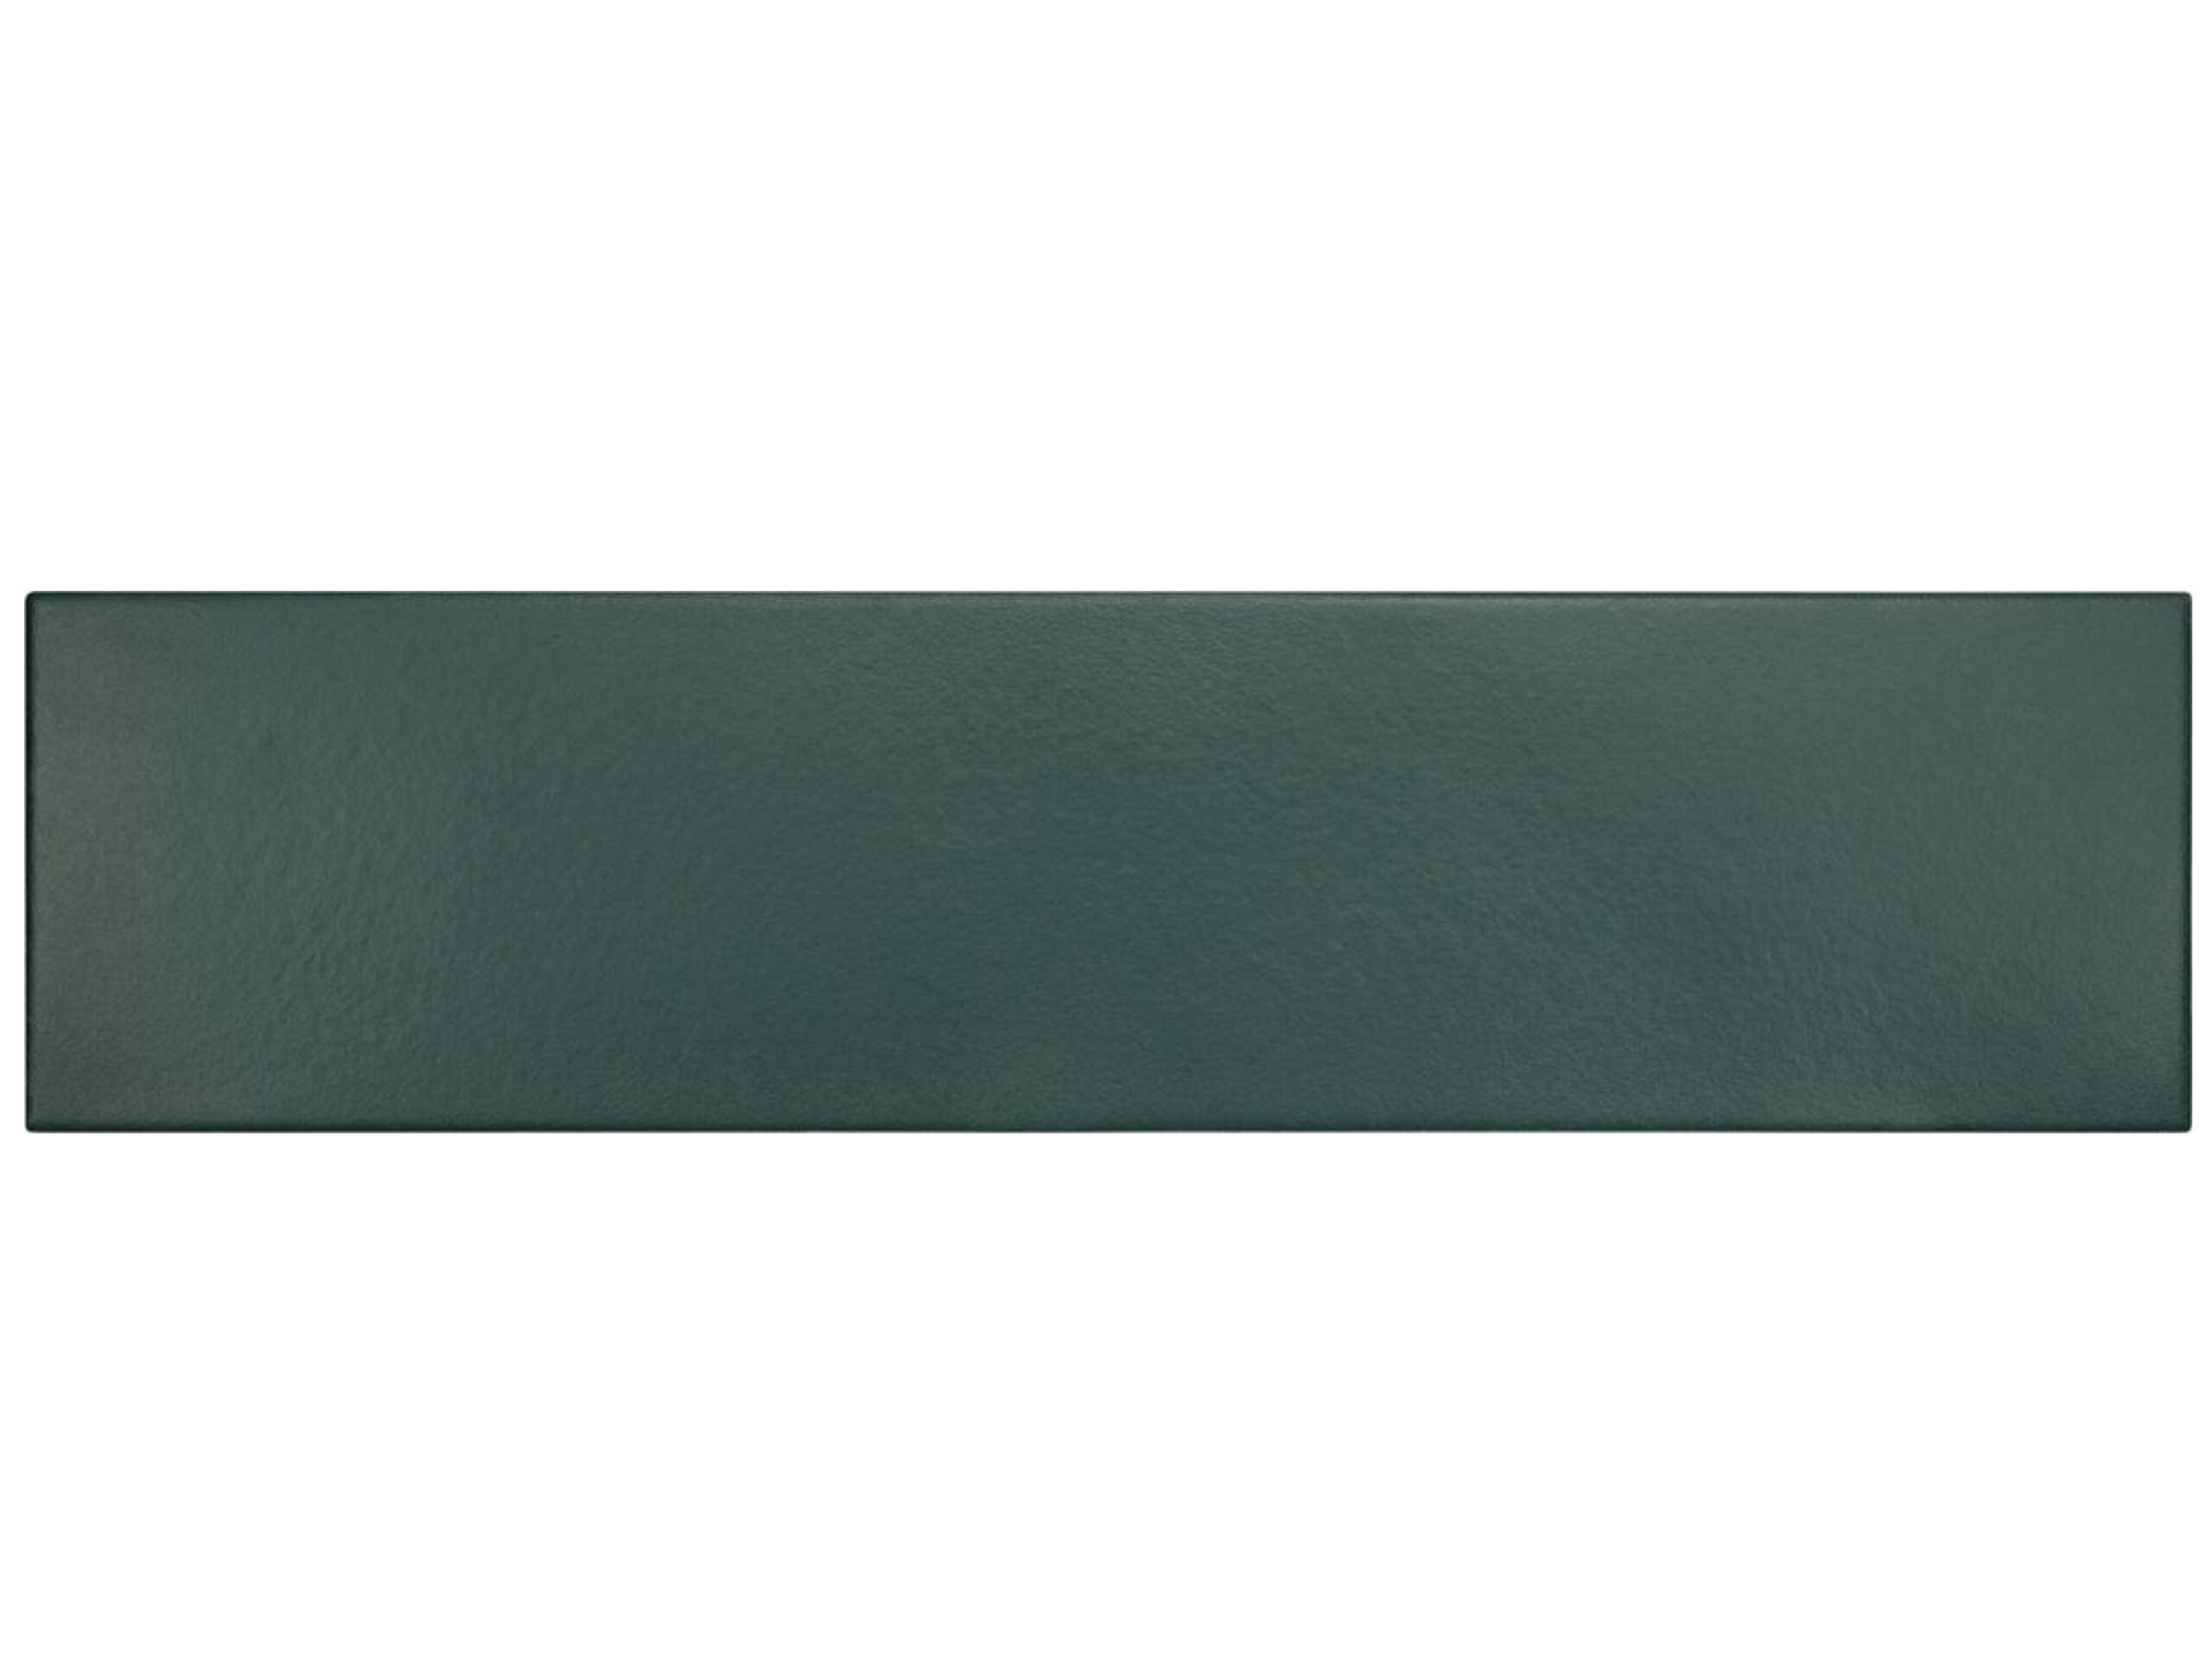 EQUIPE STROMBOLI VIRIDIAN GREEN 36,8x9,2 cegiełka zielona